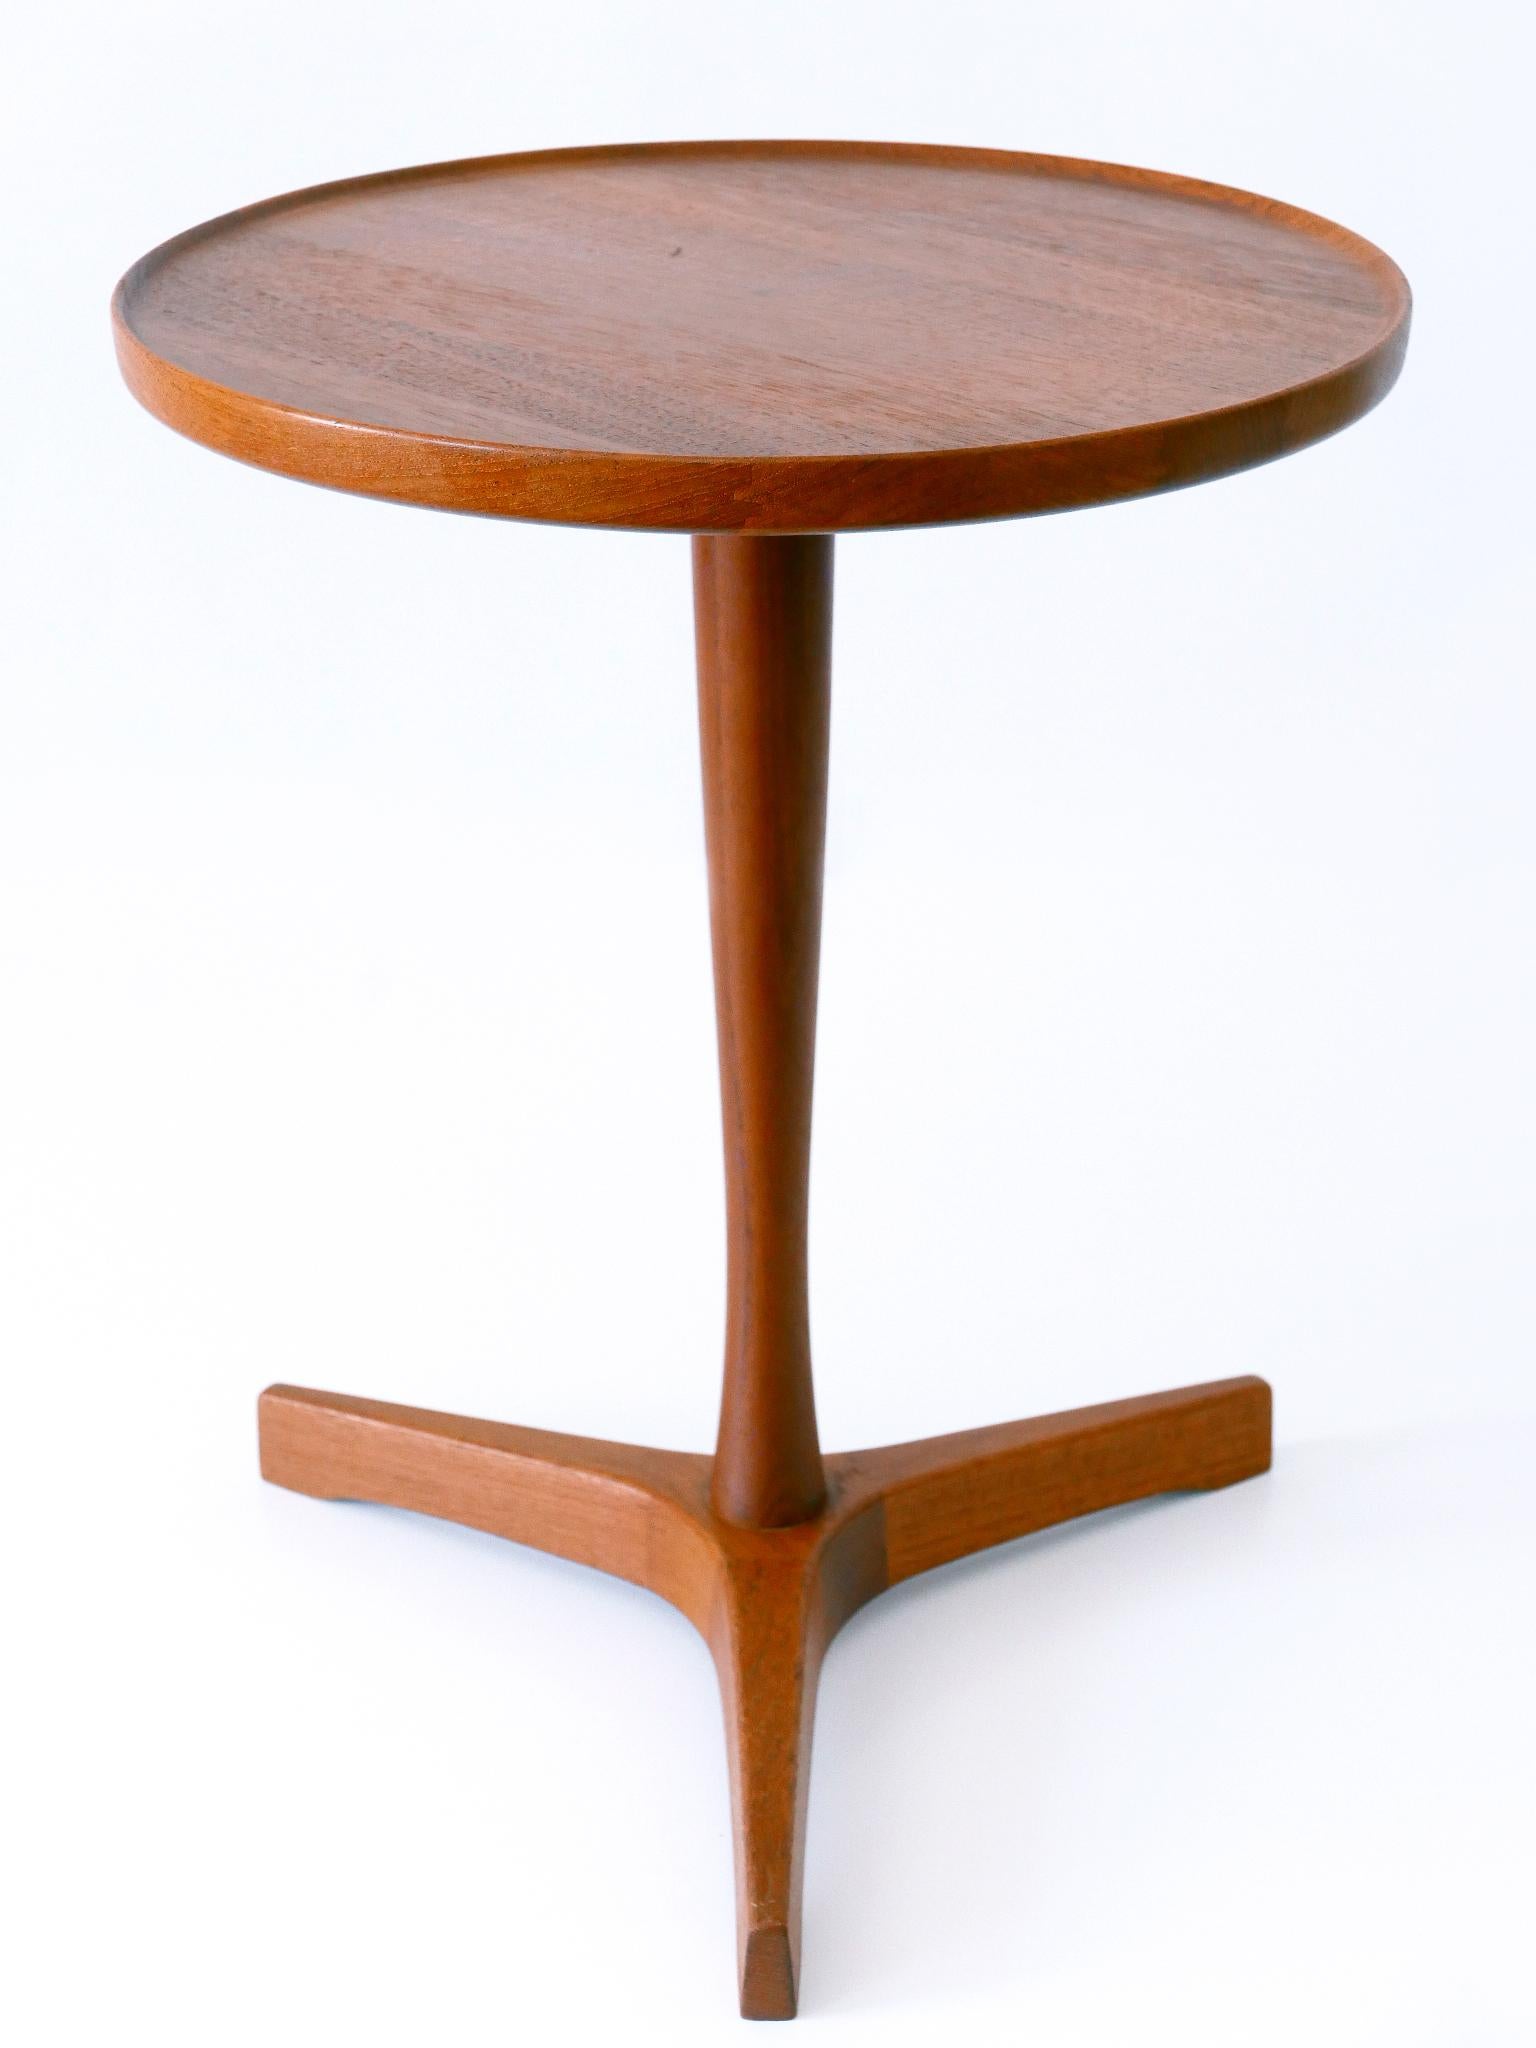 Danish Elegant Mid-Century Modern Teak Side Table by Hans C. Andersen for Artek 1960s For Sale